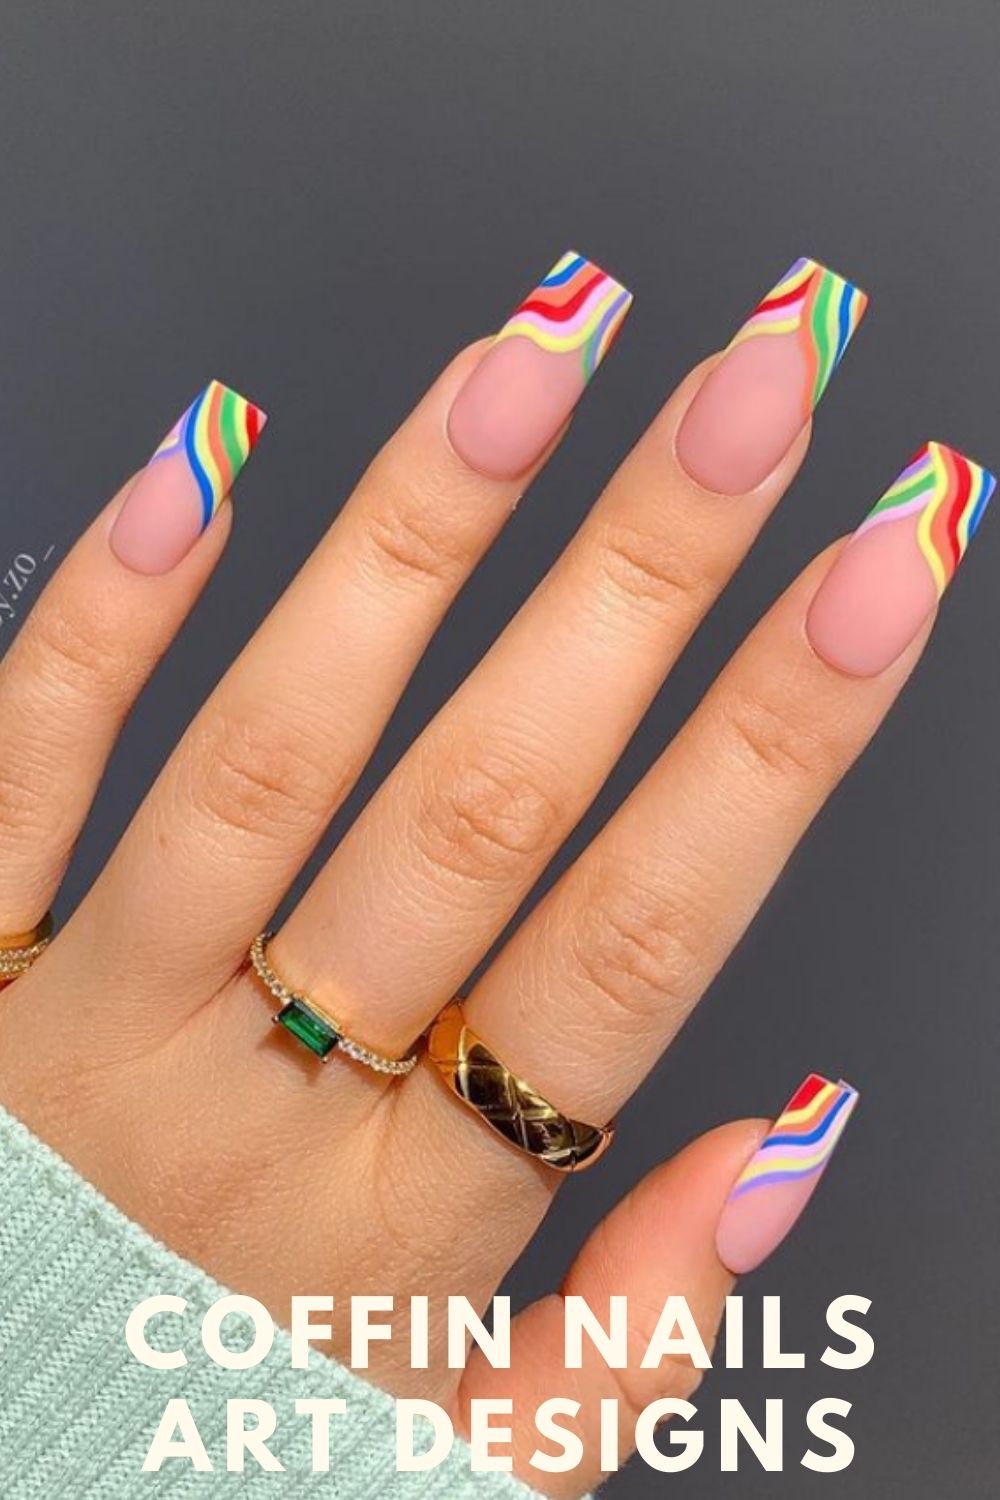 Rainbow tip coffin shape nail designs